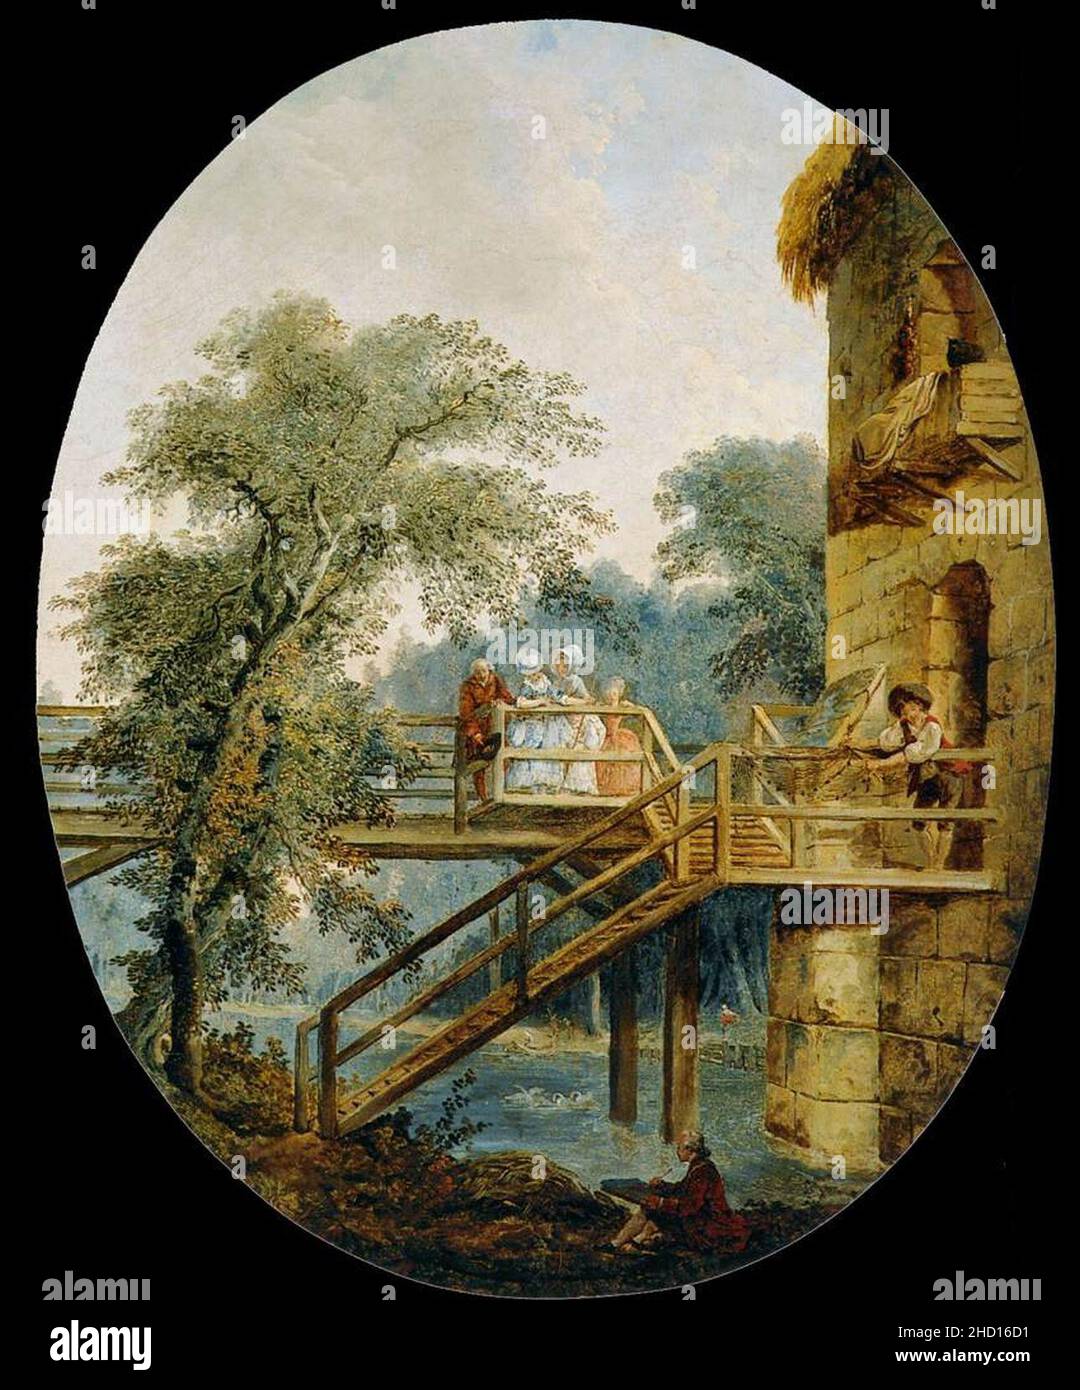 Robert, Hubert - The Footbridge - c. 1775. Stock Photo